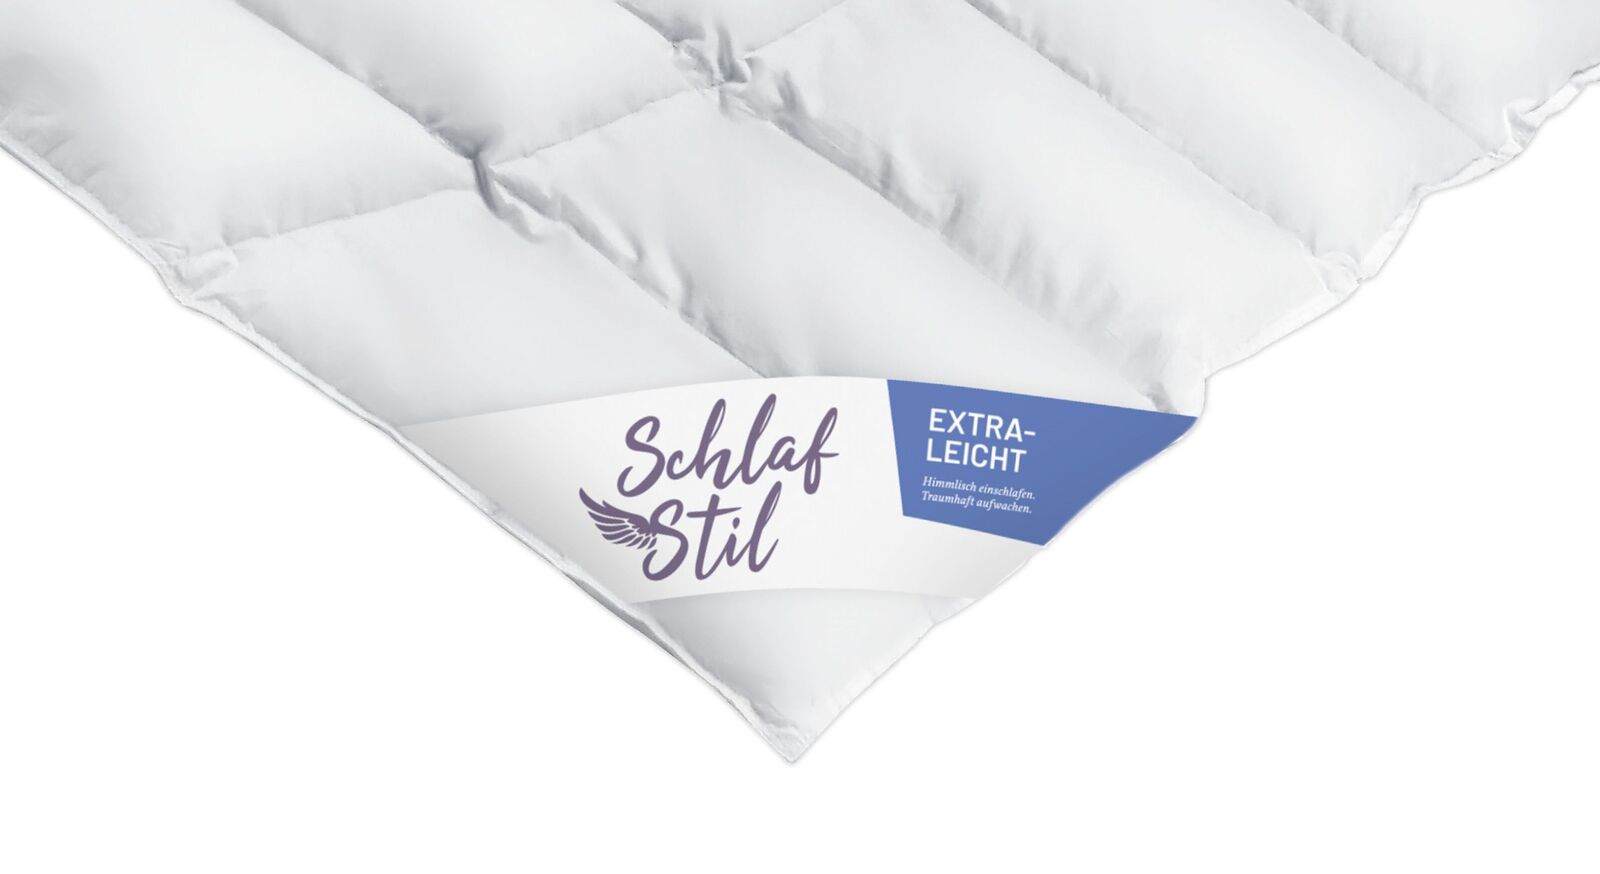 SCHLAFSTIL Eiderdaunen-Bettdecke D1000 extra leicht als Luxus-Ausstattung